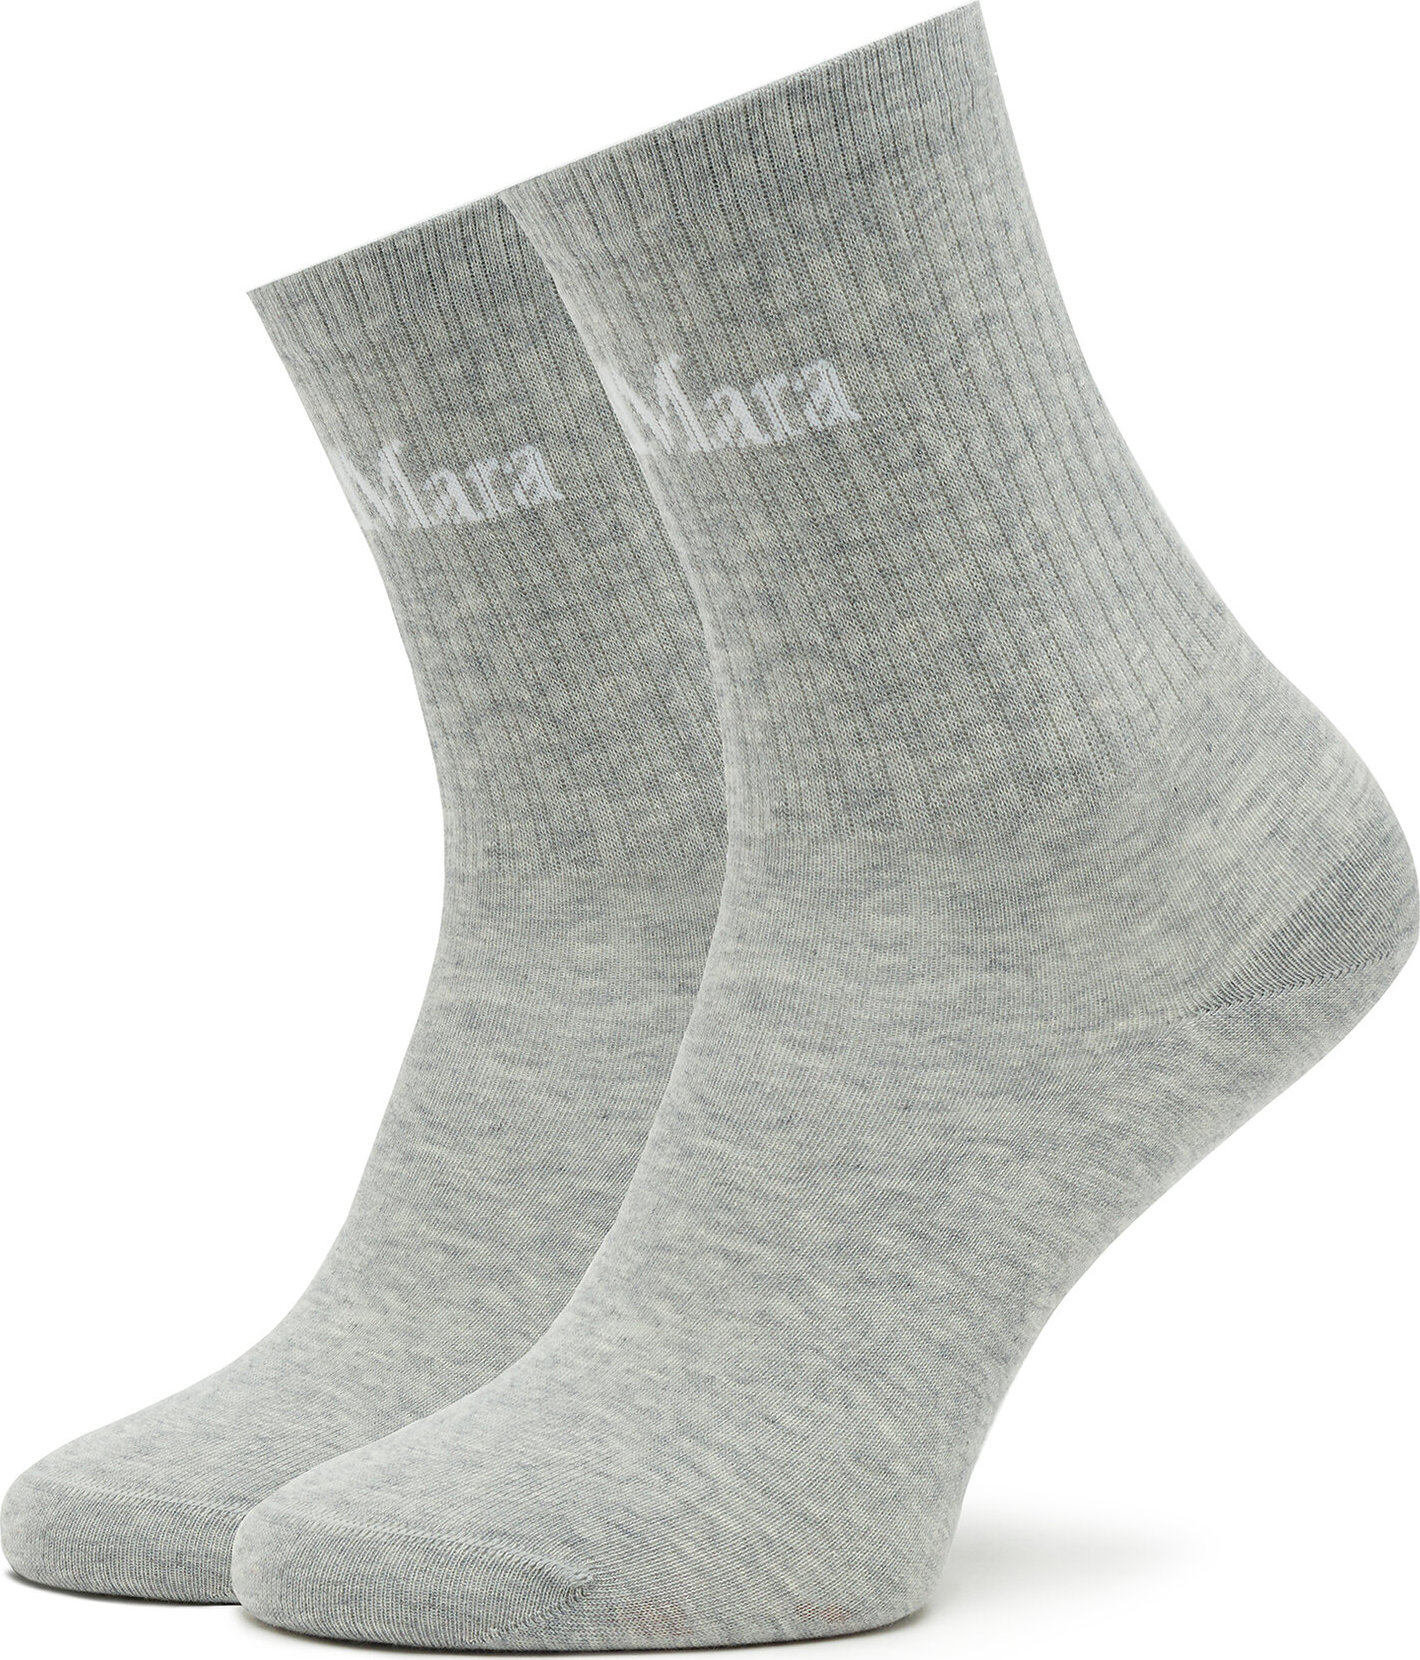 Dámské klasické ponožky Max Mara Leisure Comodo 2335560136600 Light Grey